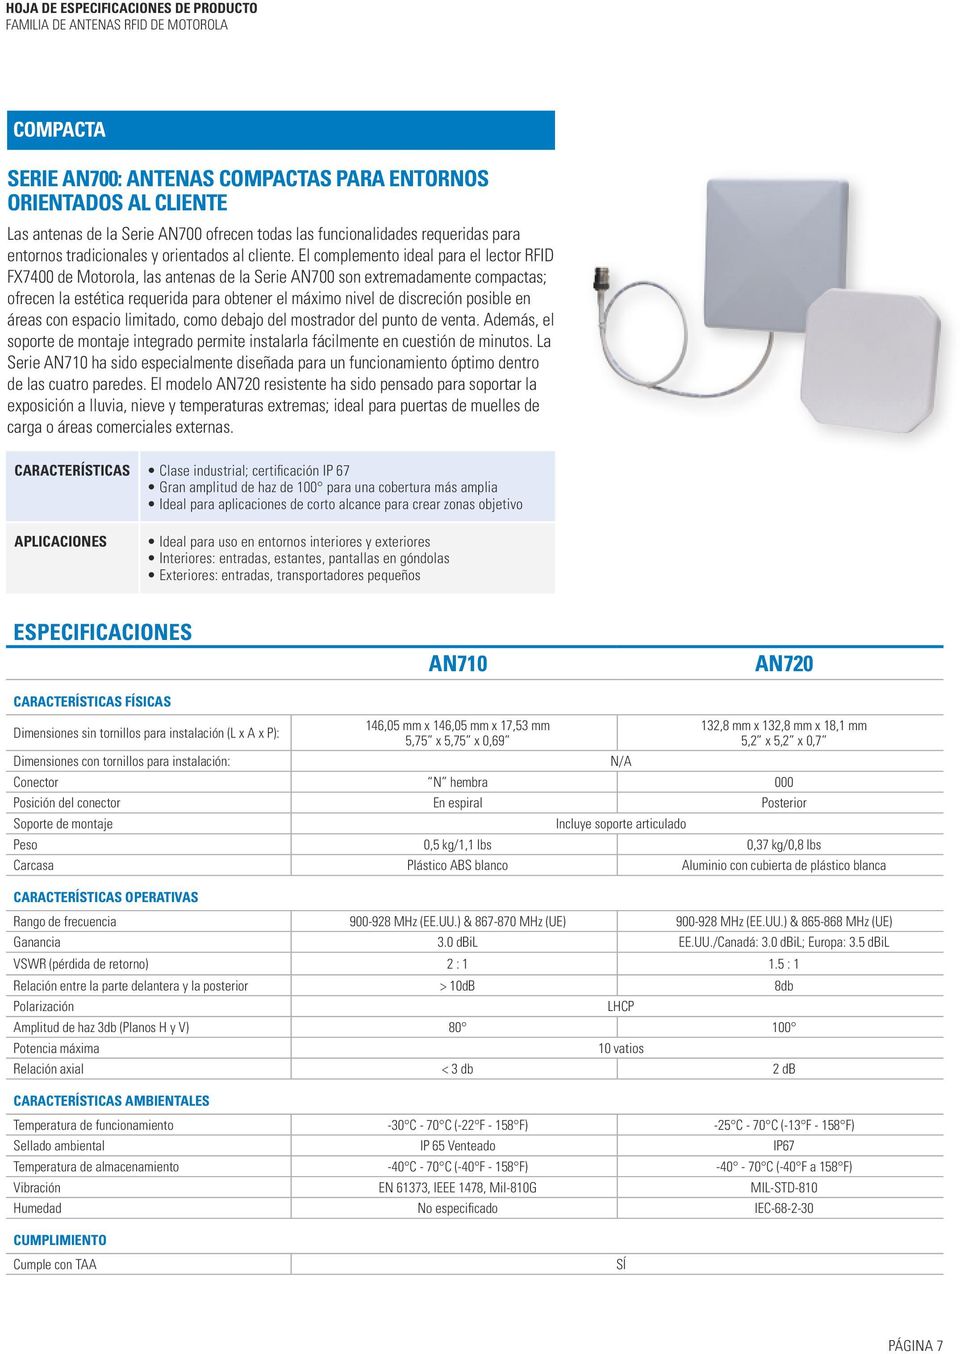 El complemento ideal para el lector RFID FX7400 de Motorola, las antenas de la Serie AN700 son extremadamente compactas; ofrecen la estética requerida para obtener el máximo nivel de discreción